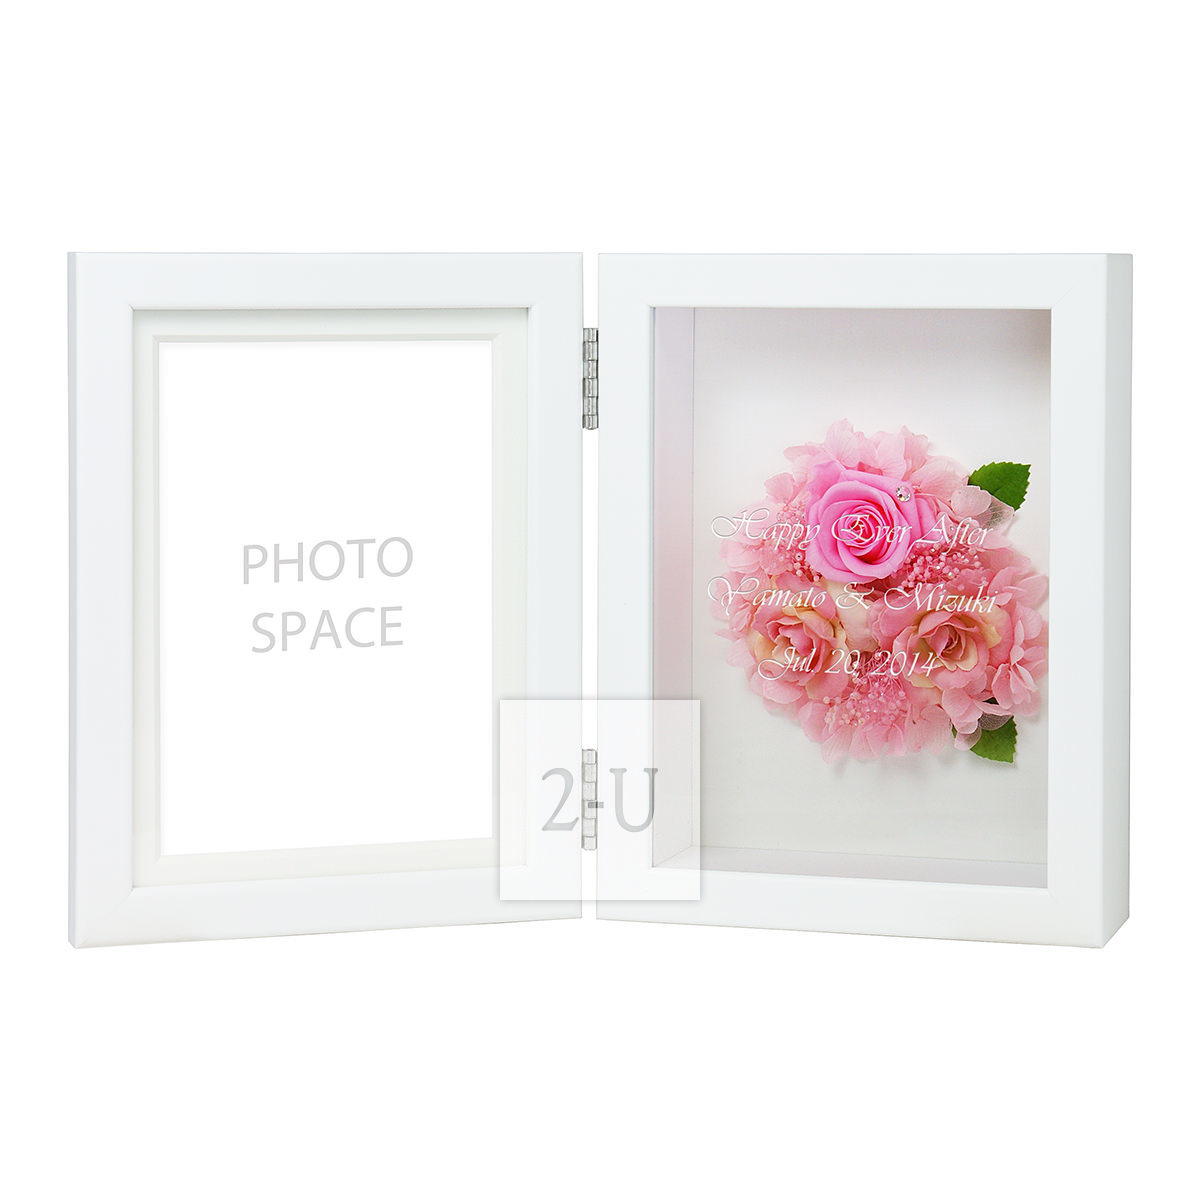 多綵玫瑰保鮮花相框相架 L 粉色